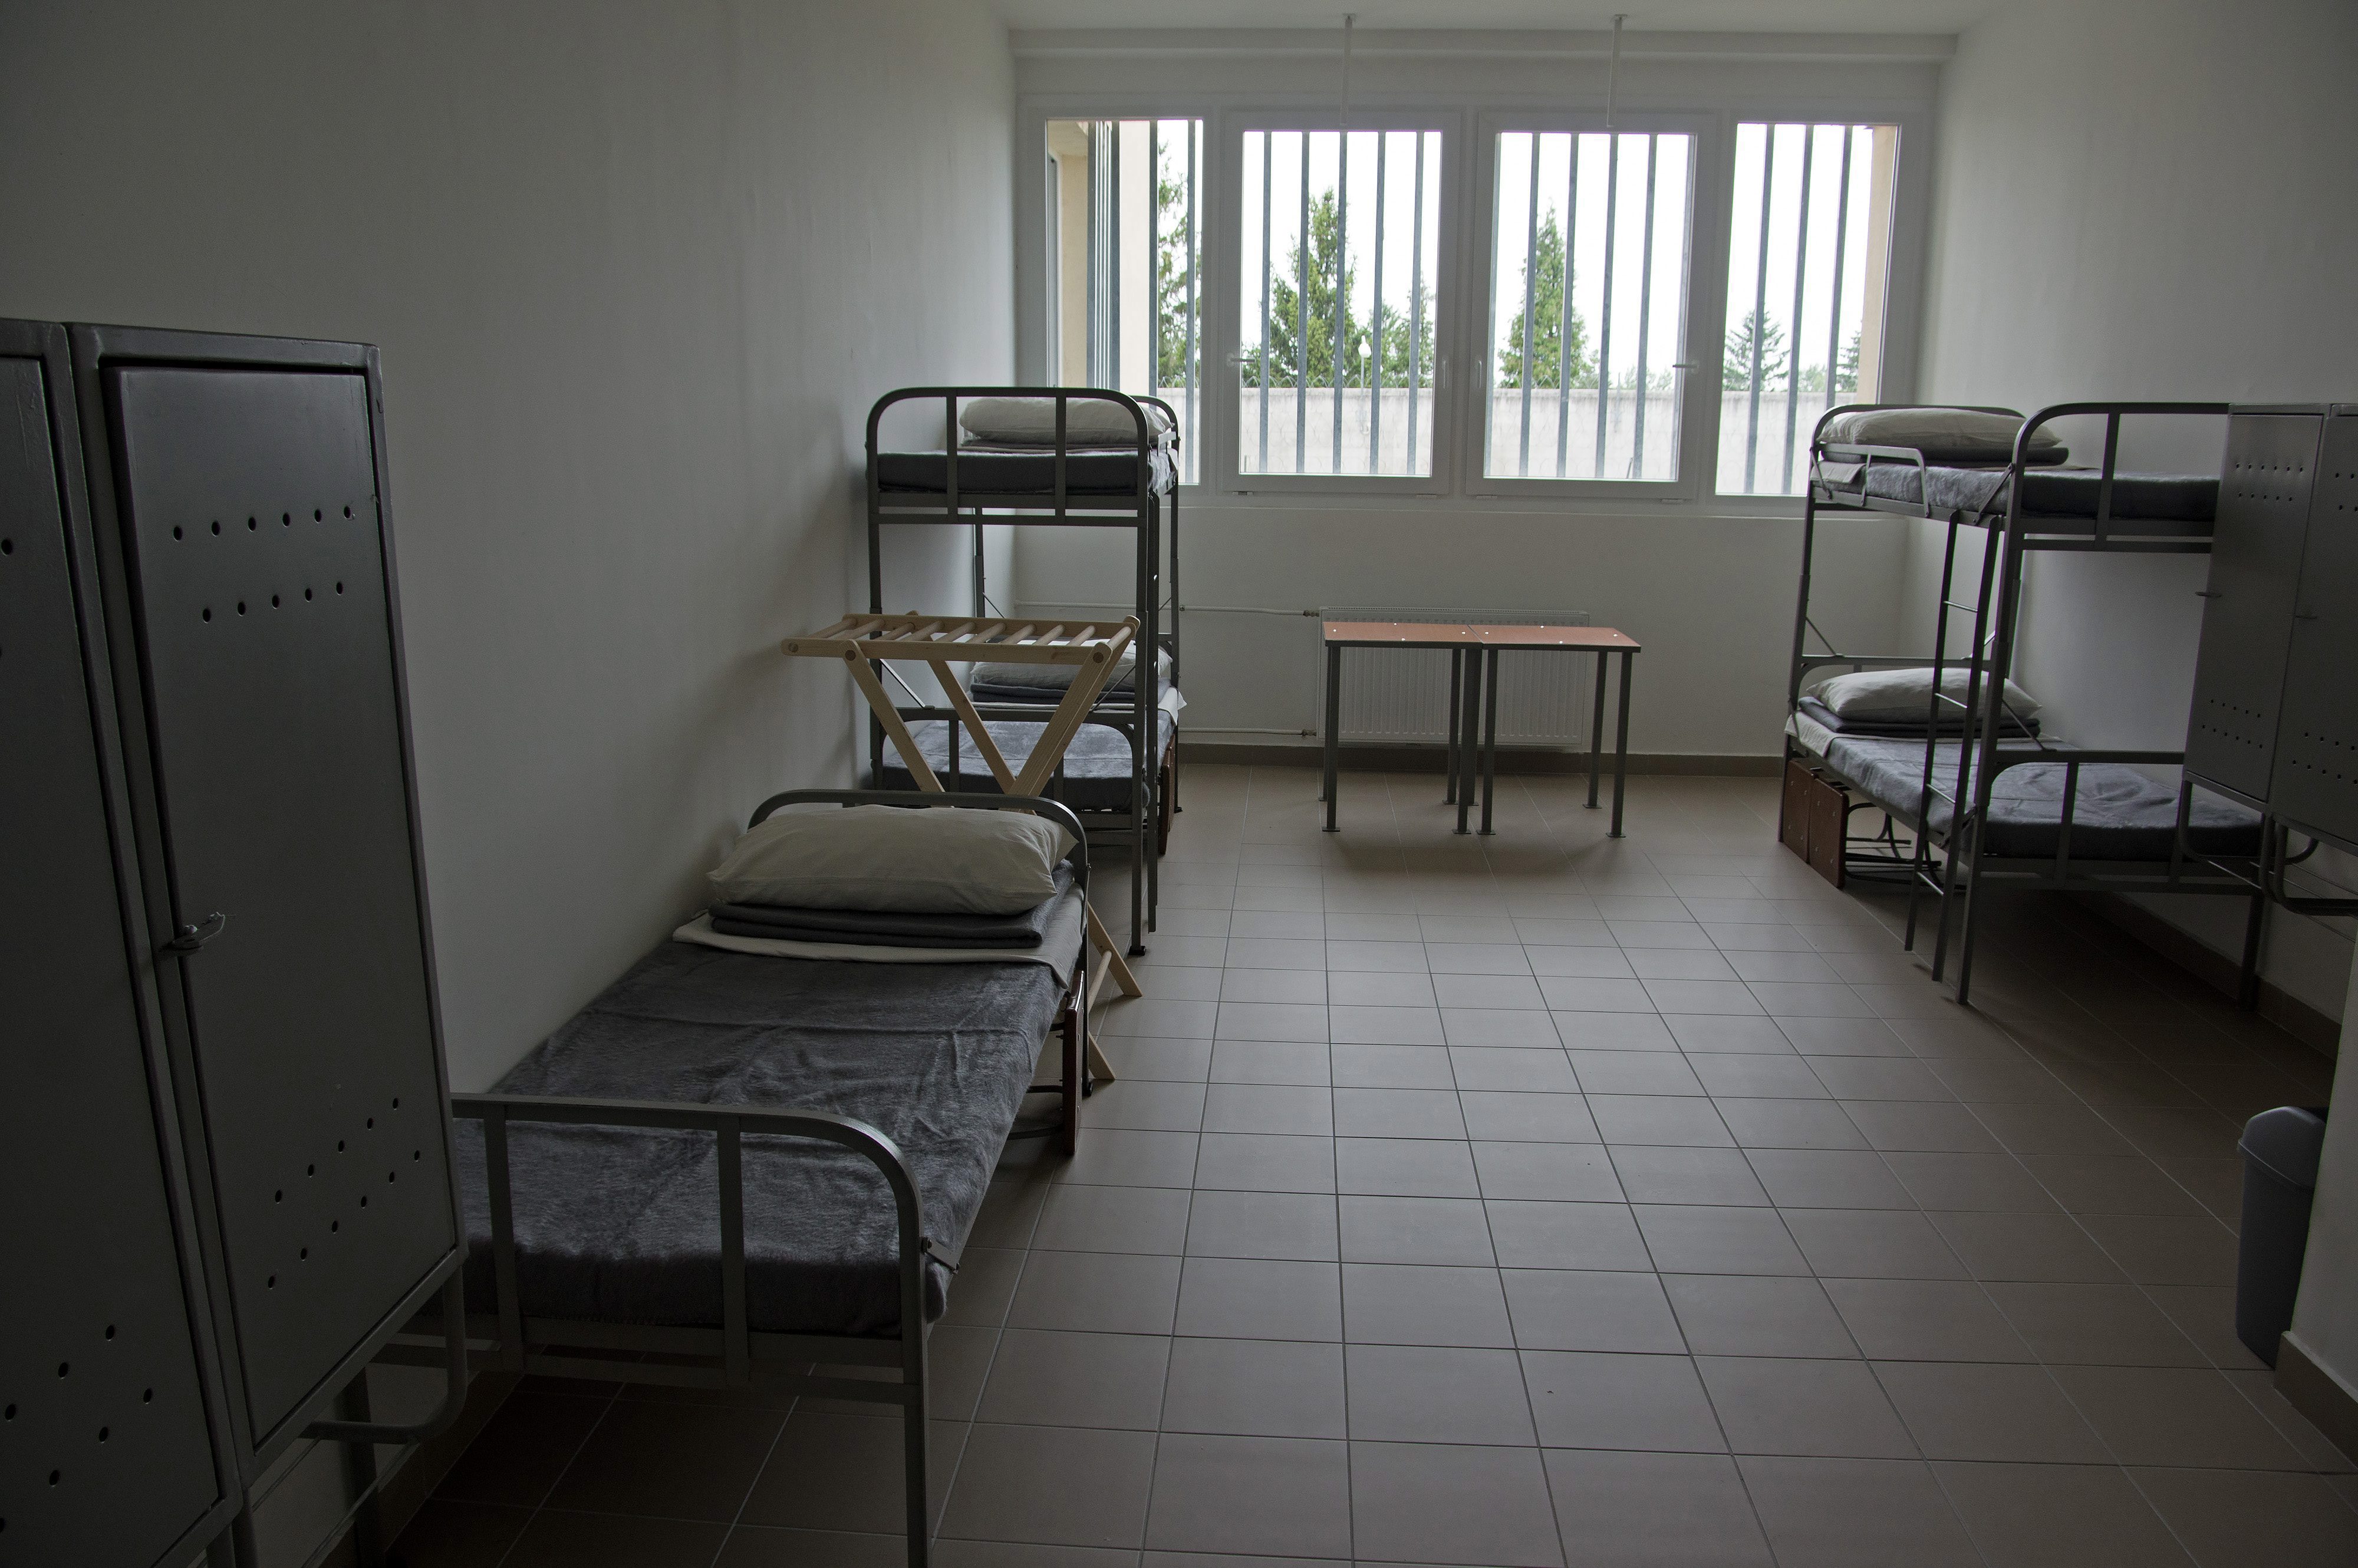 Fogvatartotti körlet a Szombathelyi Országos Büntetés-végrehajtási Intézet korábban használaton kívüli épületében Szombathelyen 2015. július 13-án.